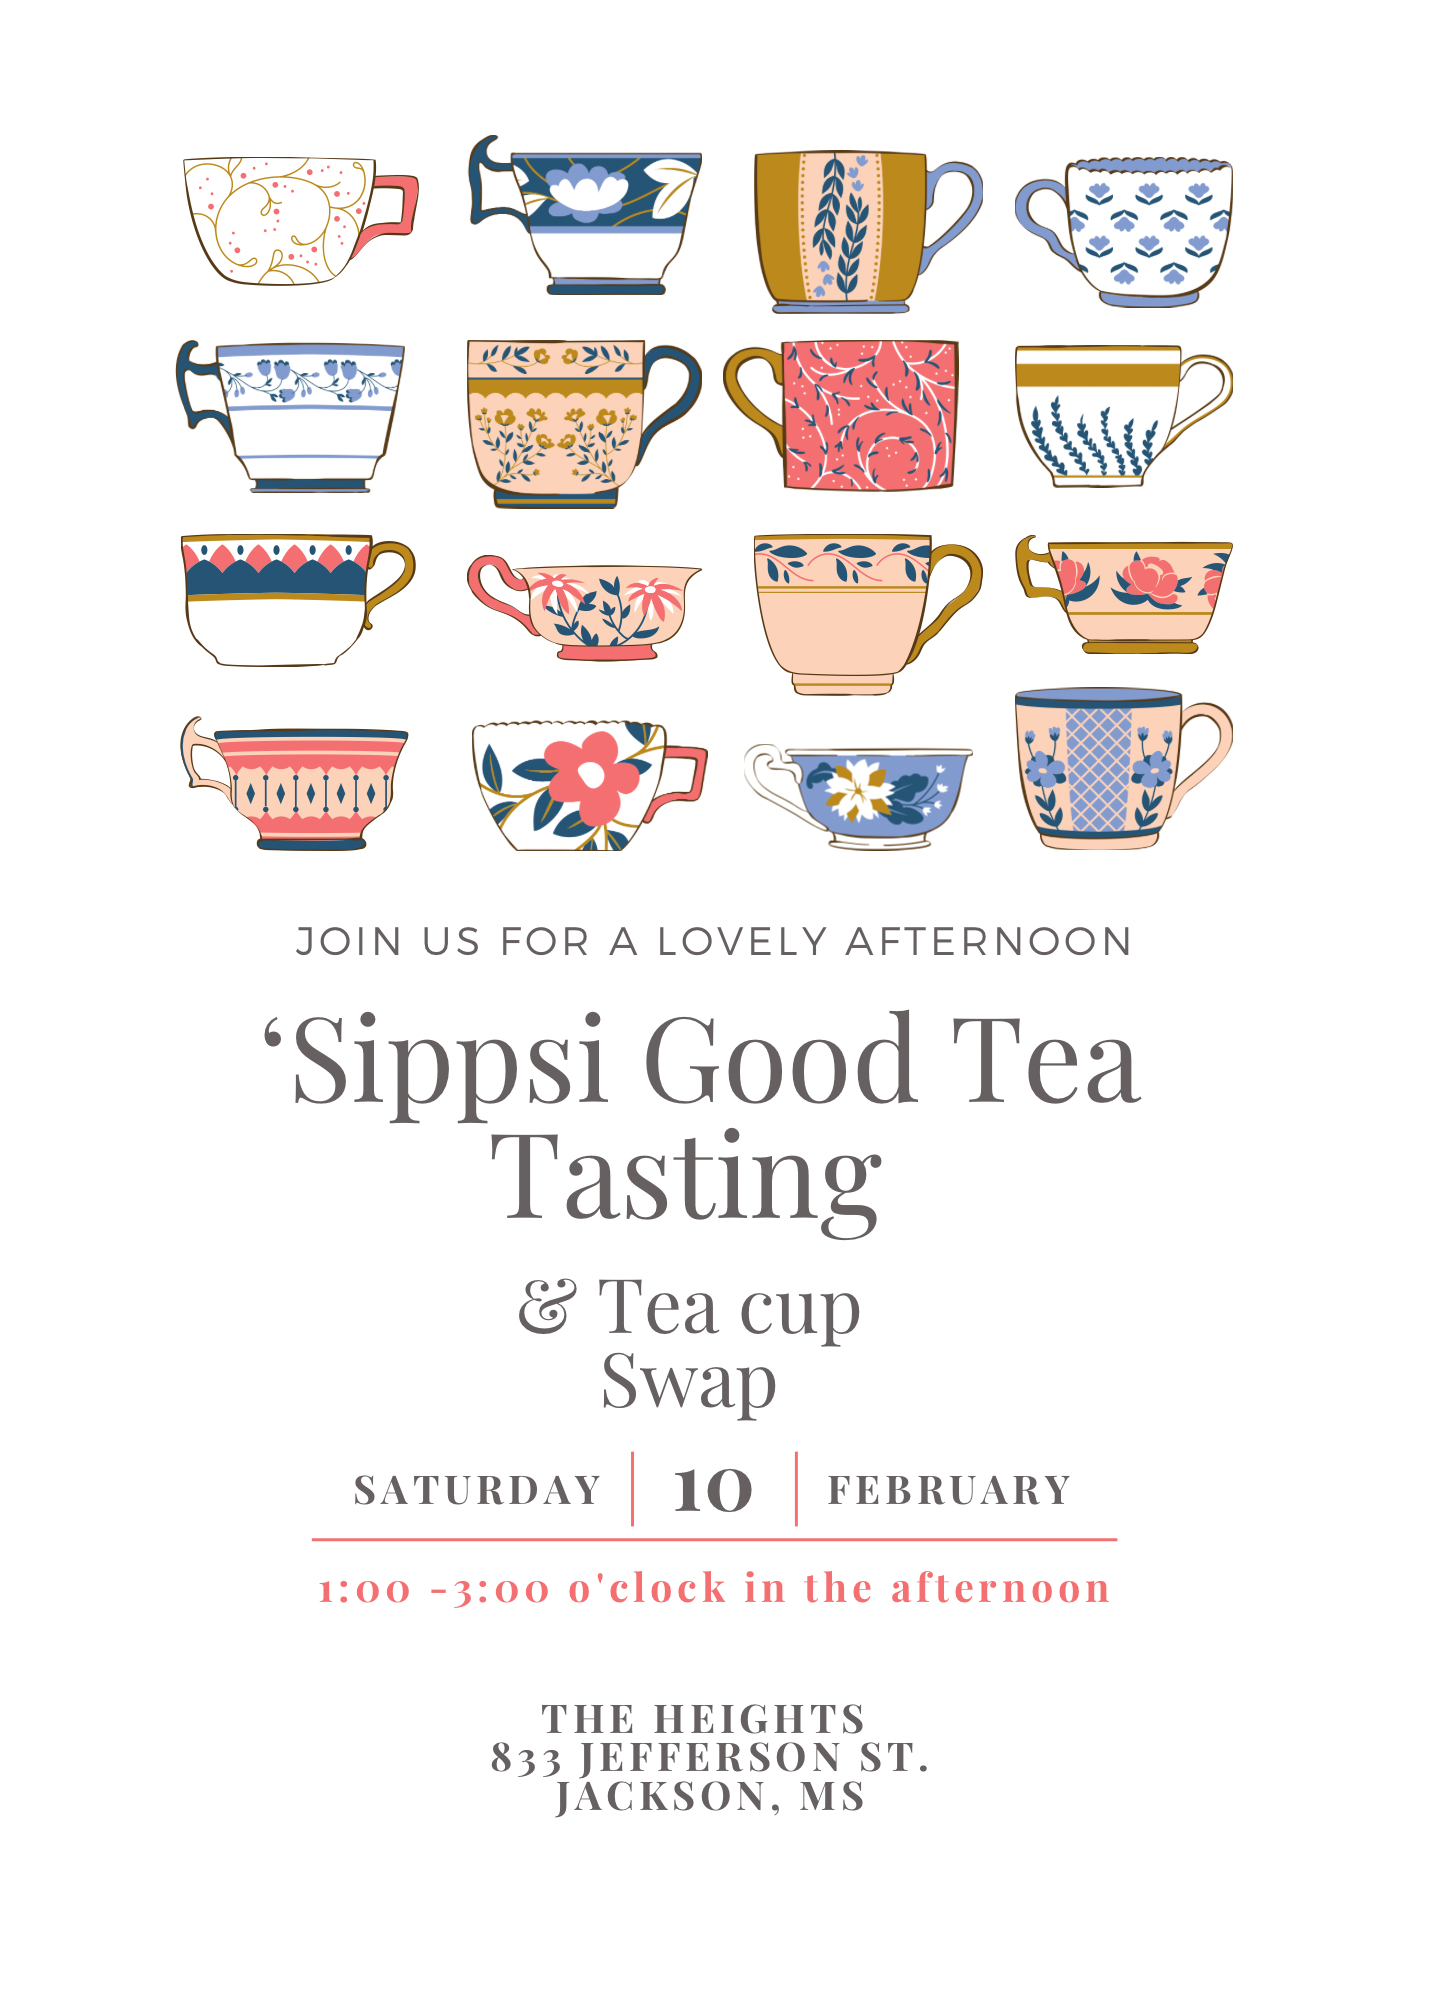 Tea Tasting  Event with Mug and Steeper